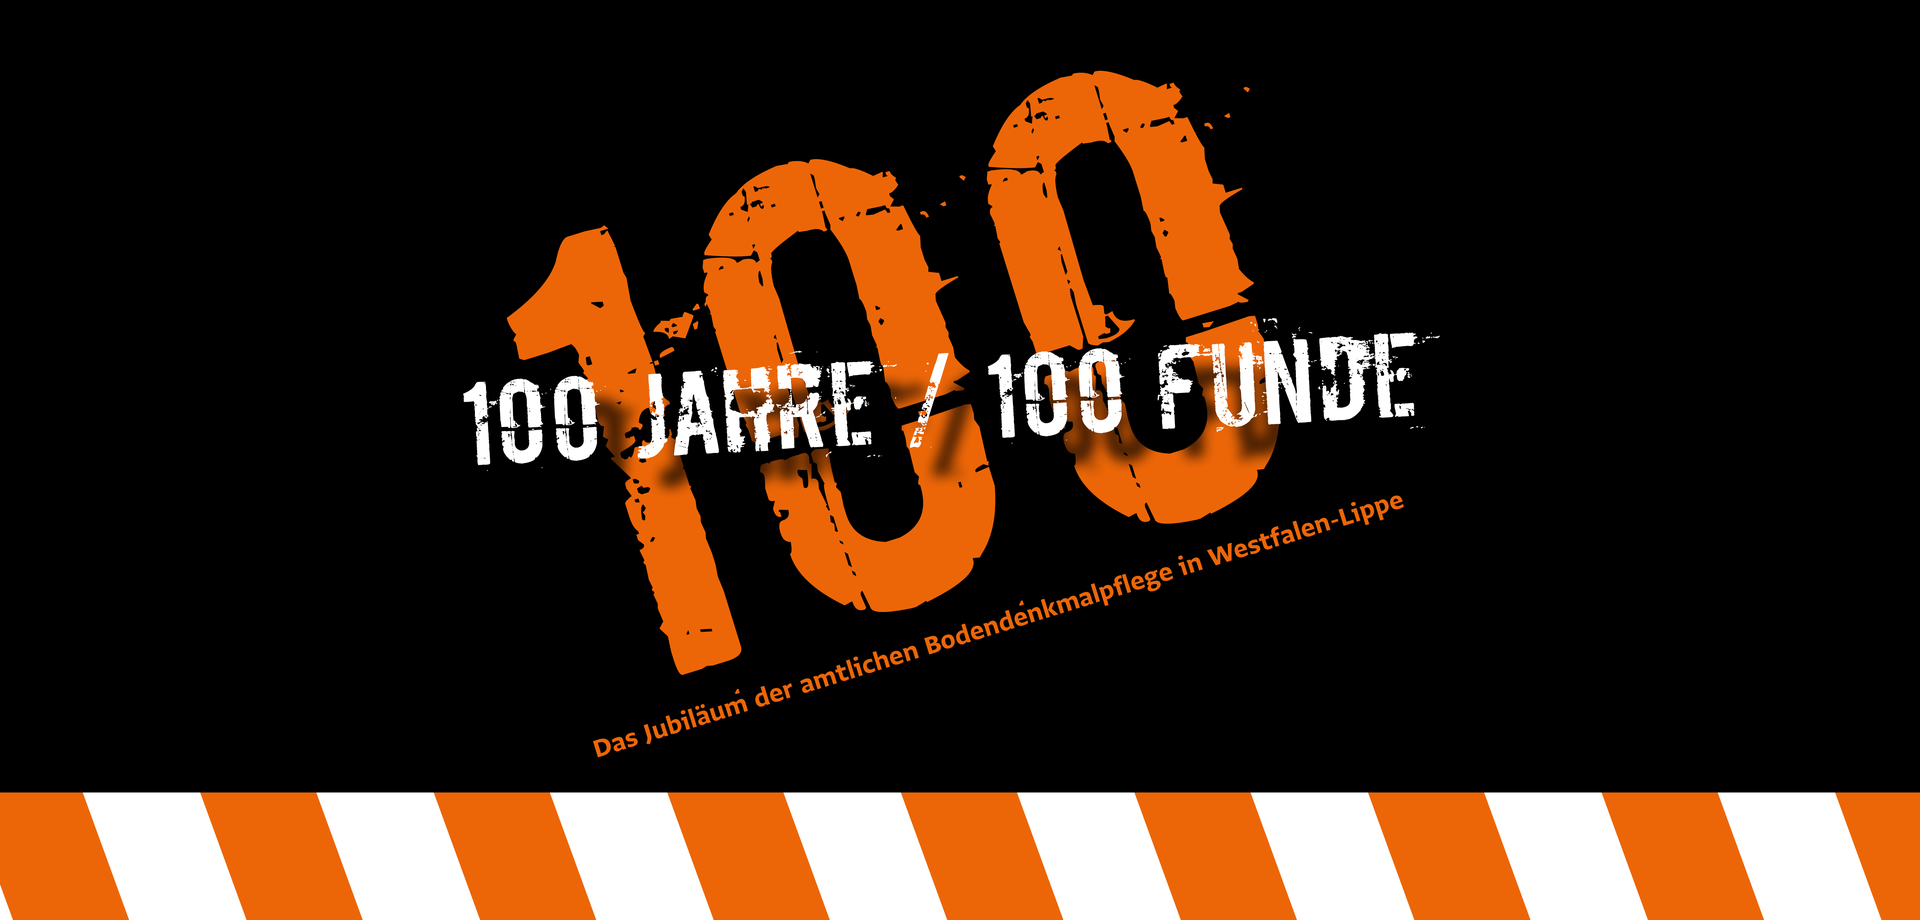 Grafik, große 100 im Hintergrund und Schriftzüge "100 Jahre / 100 Funde" und "Das Jubiläum der amtlichen Bodendenkmalpflege in Westfalen-Lippe"